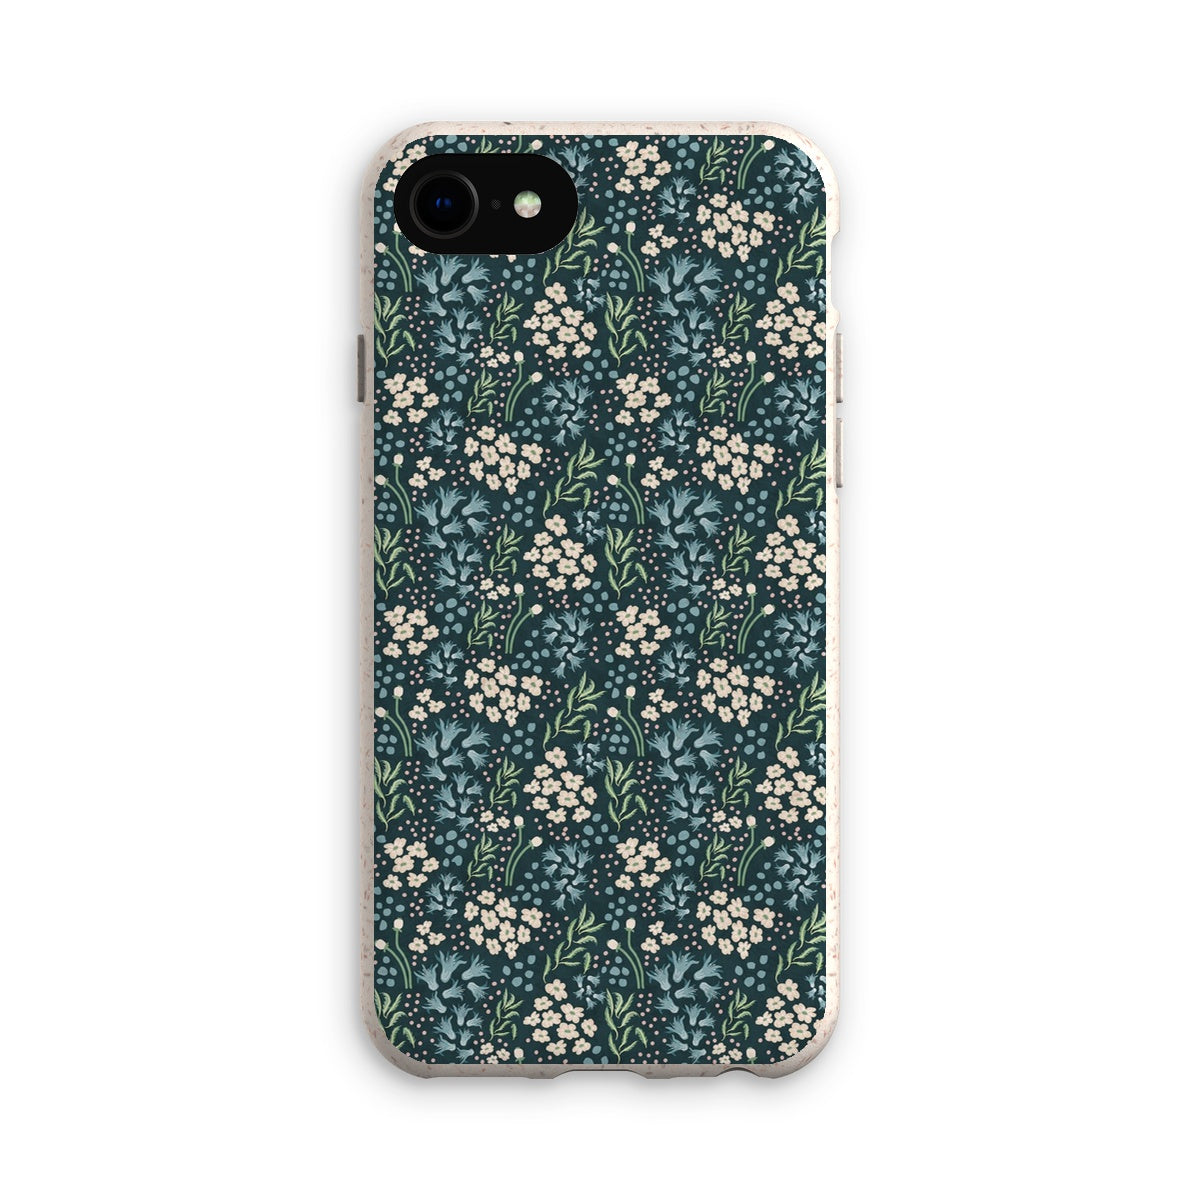 Teal Elegance: Vintage Floral Ditsy Eco Phone Case